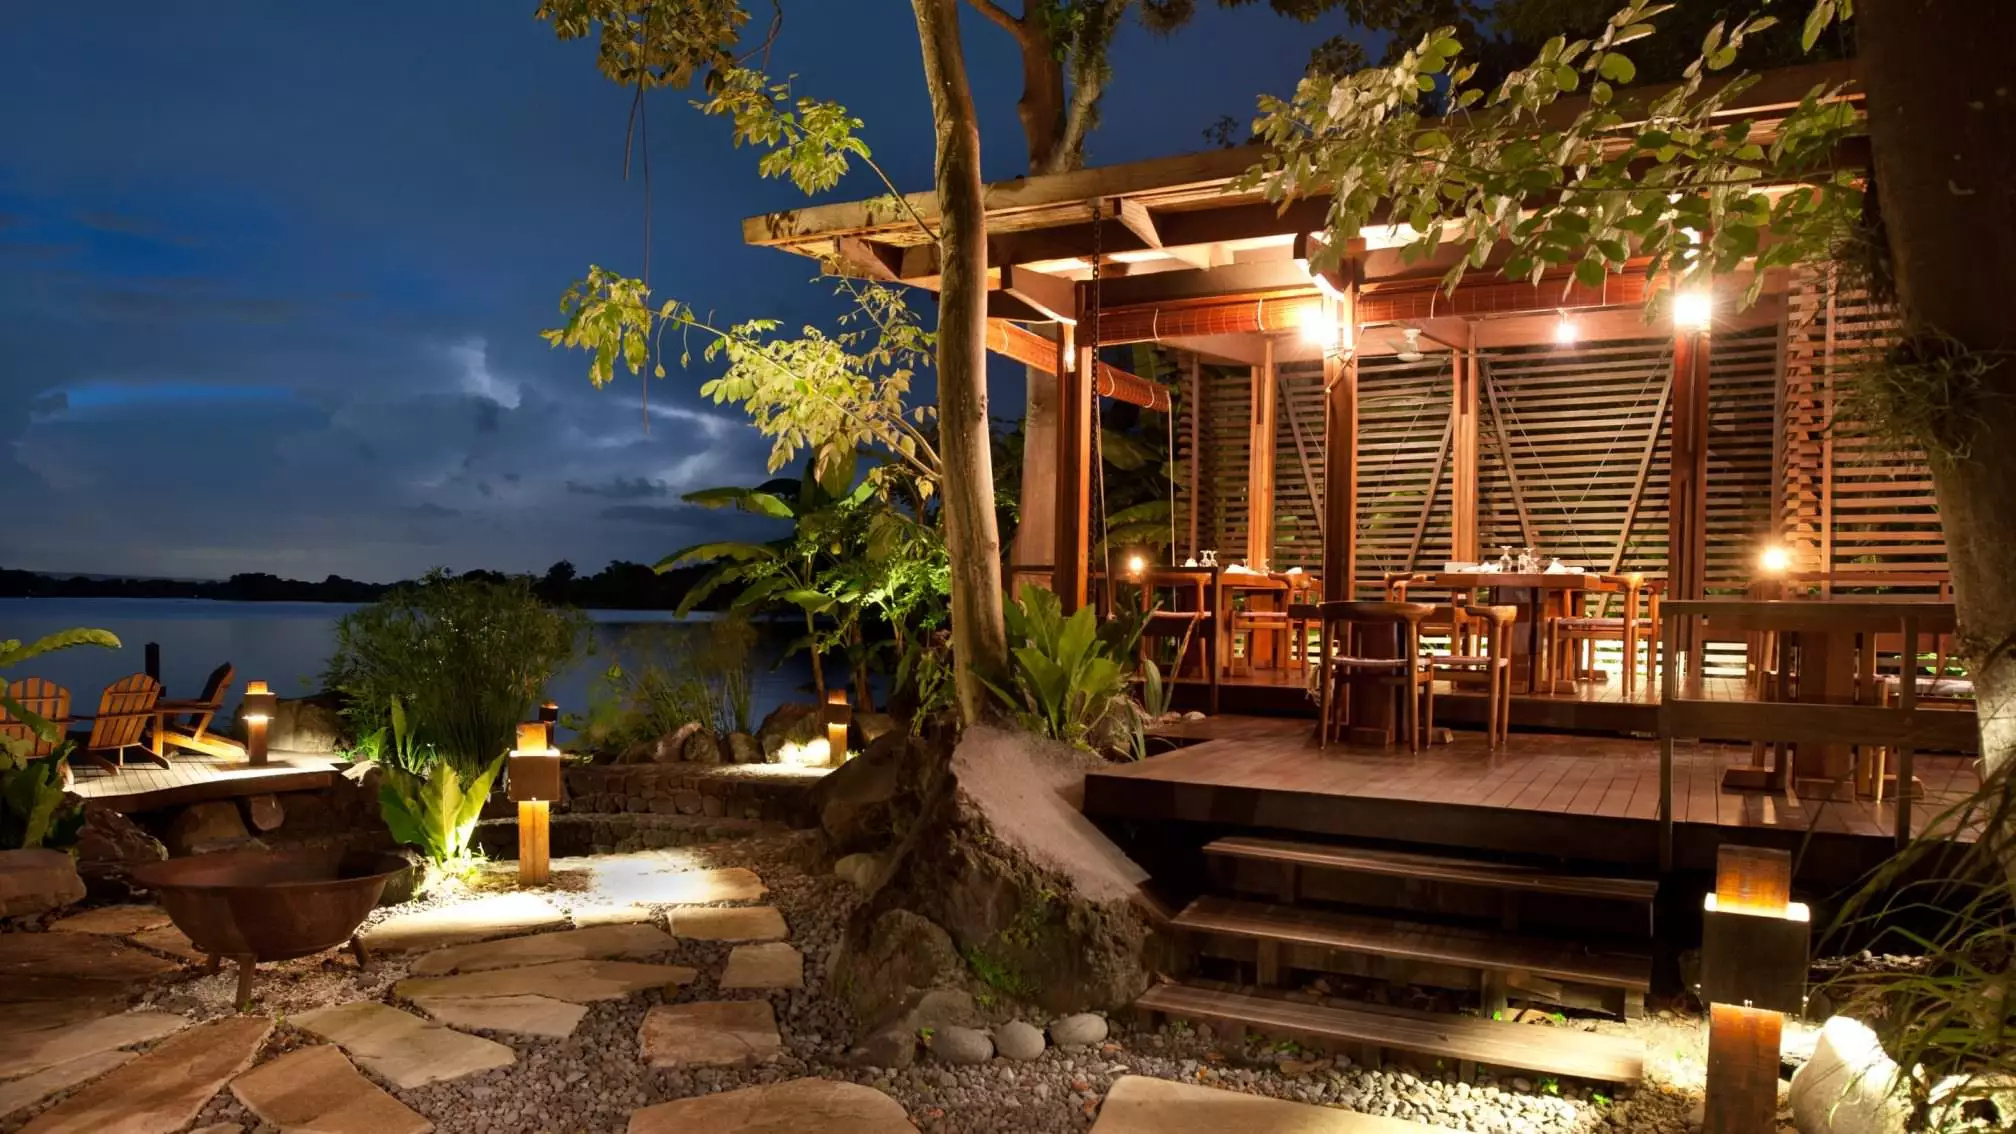 Jicaro Island Lodge, Inspire lassen, 2020x1140 HD Desktop